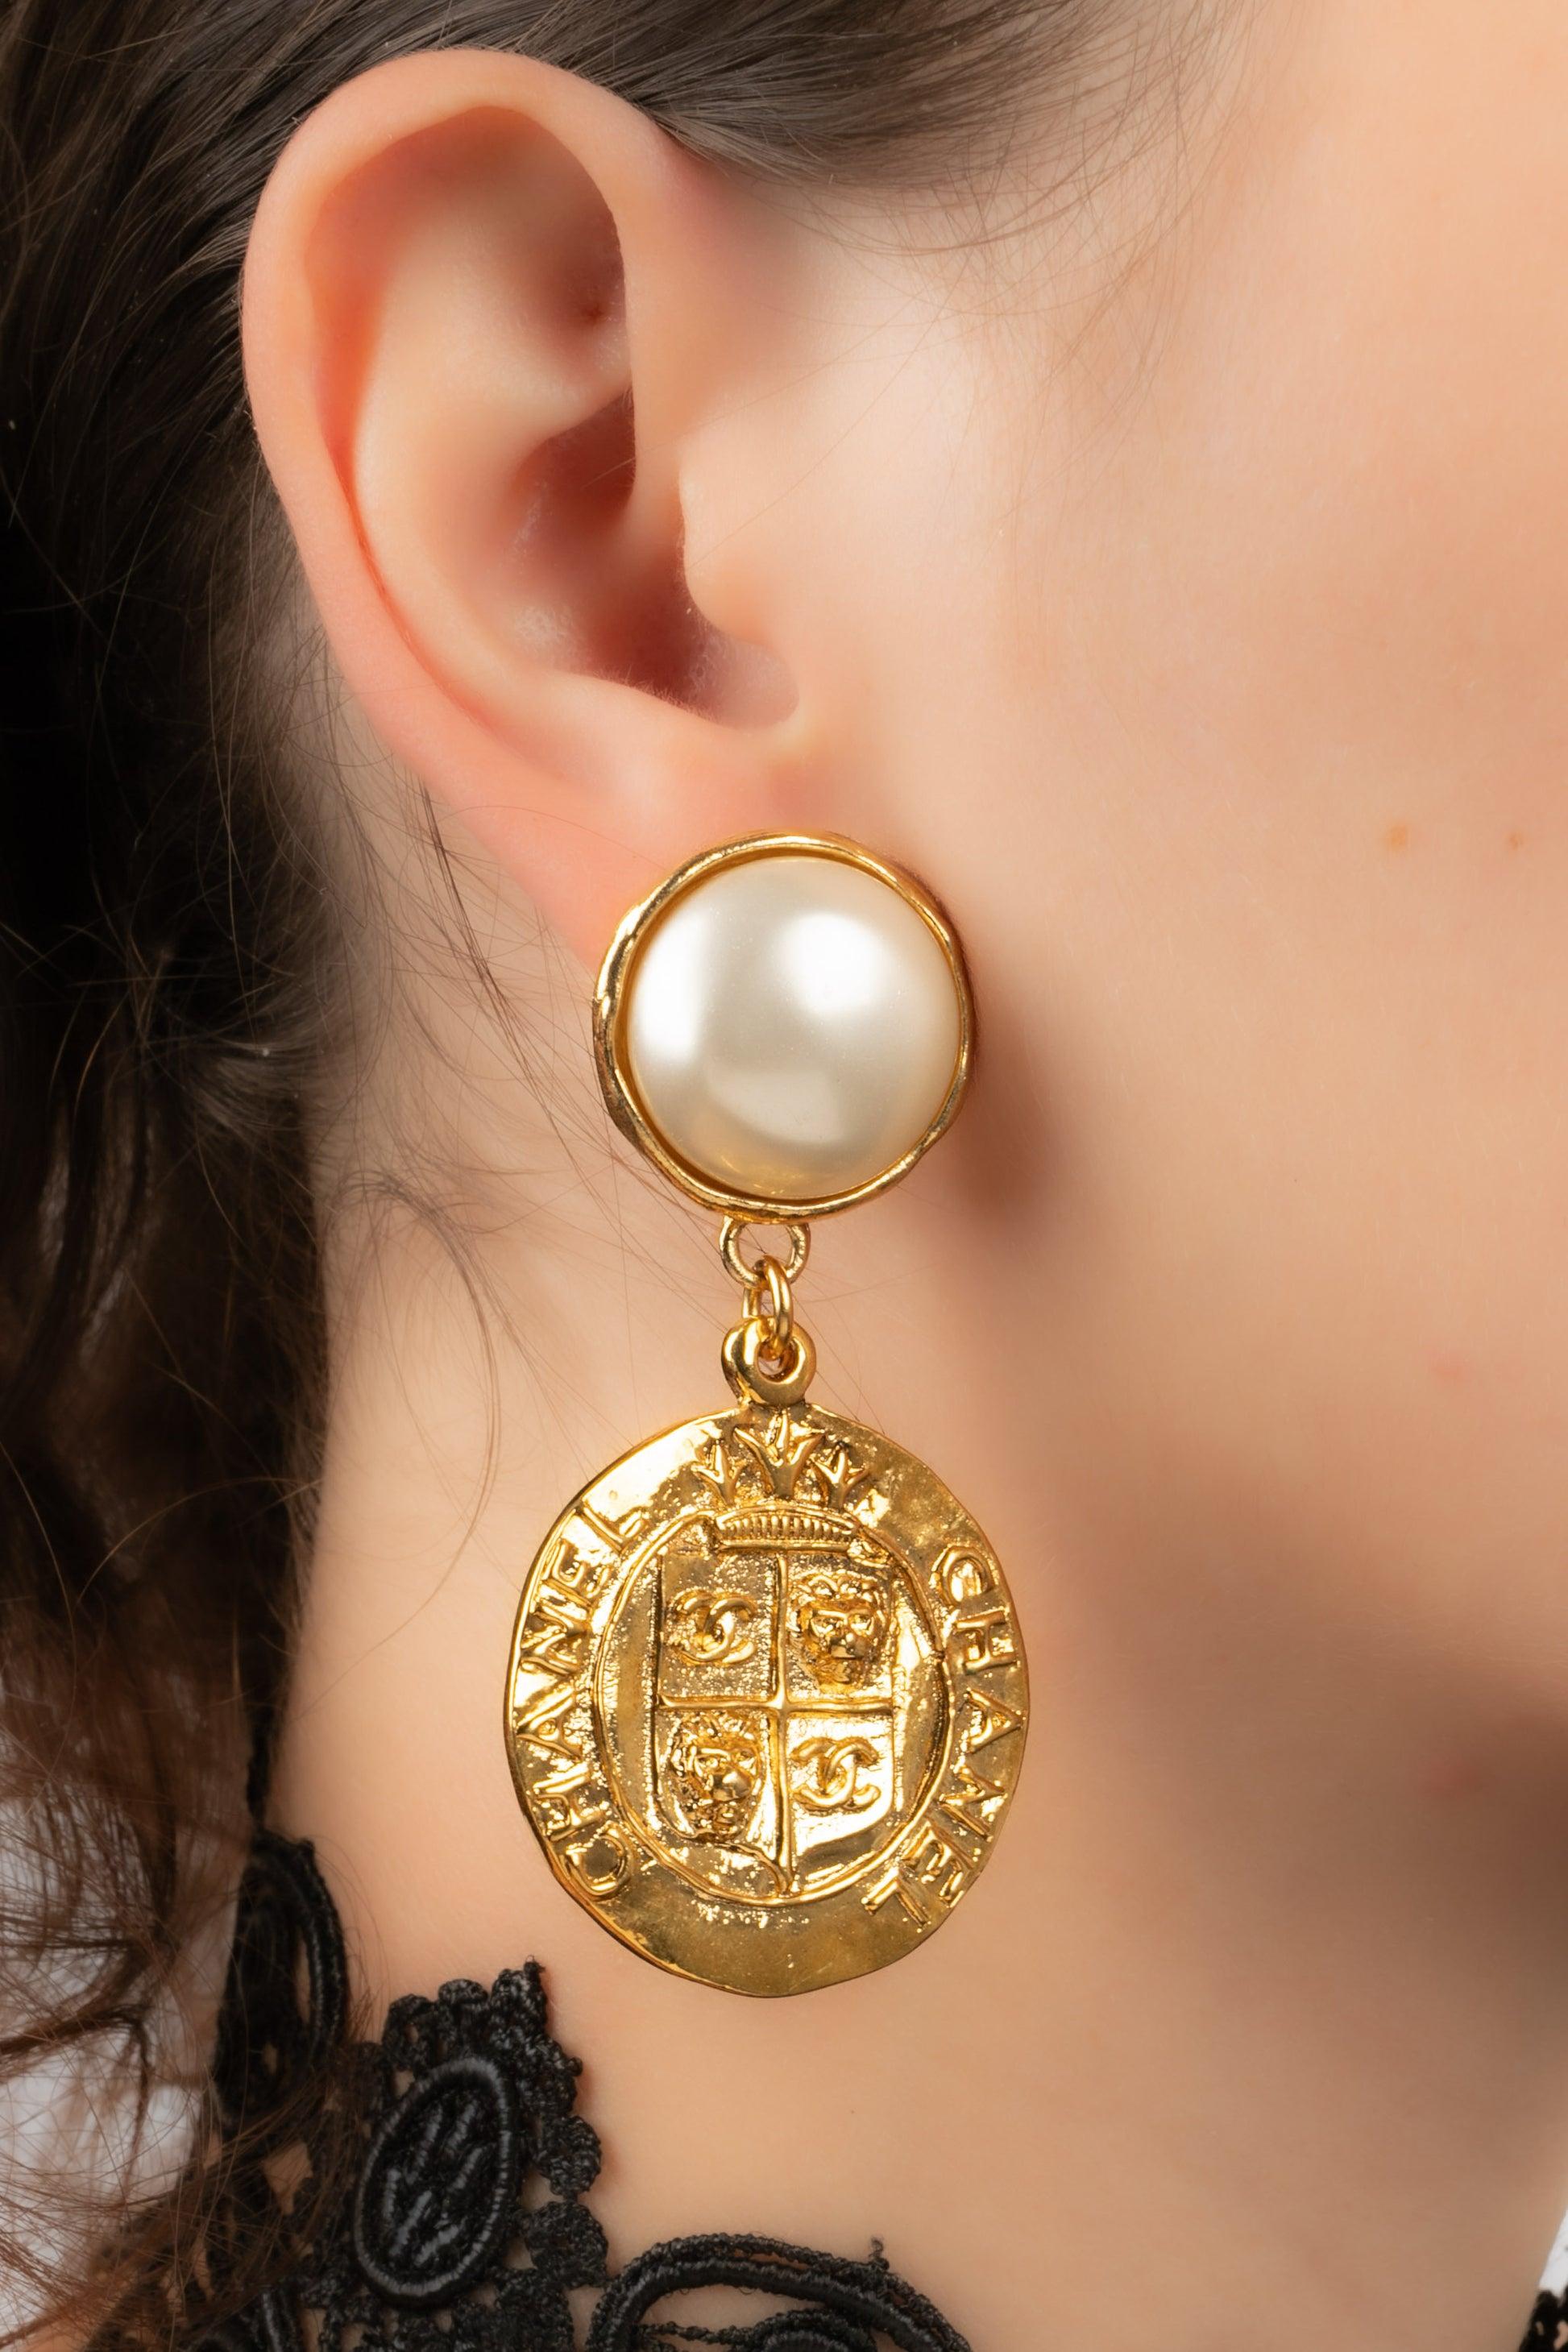 Chanel - (Made in France) Goldene Ohrringe aus Metall mit Perlencabochons.

Zusätzliche Informationen:
Zustand: Sehr guter Zustand
Abmessungen: Länge: 6.5 cm

Sellers Referenz: BOB212